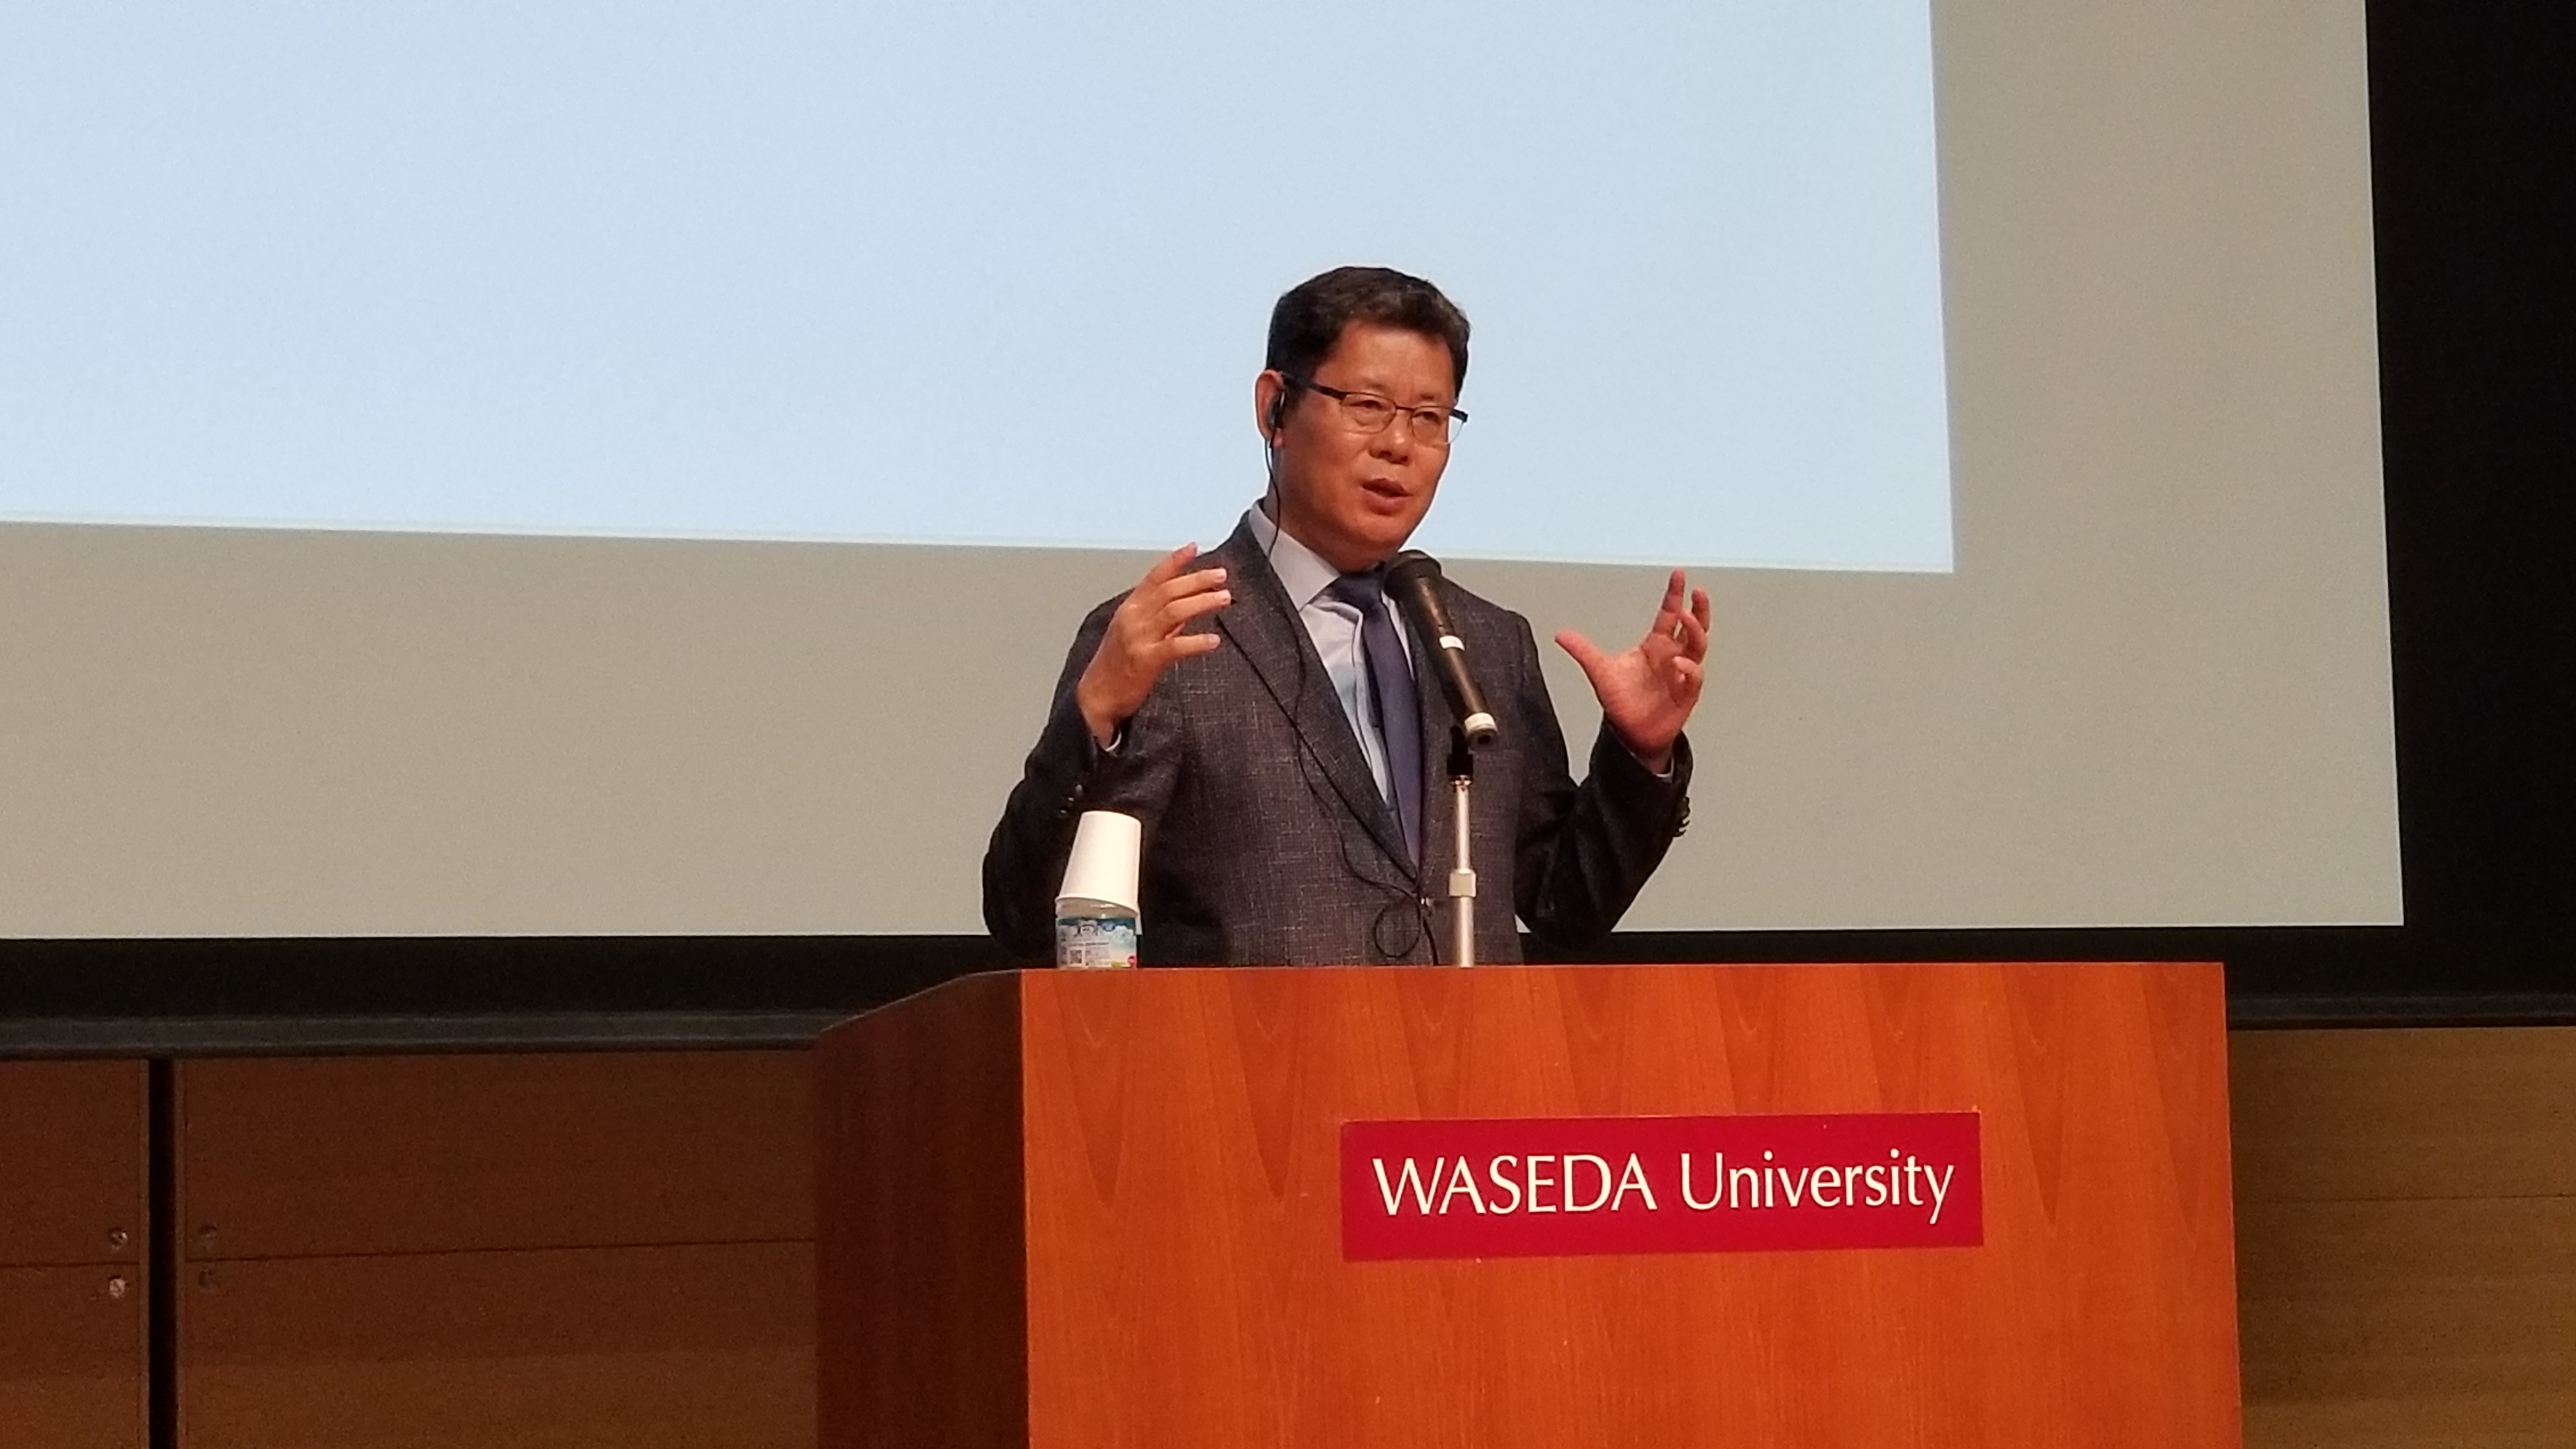 김연철 통일연구원장이 12일 일본 도쿄 와세다대에서 열린 ‘한반도 평화체제의 쟁점과 전망’ 심포지엄에서 강연하고 있다.